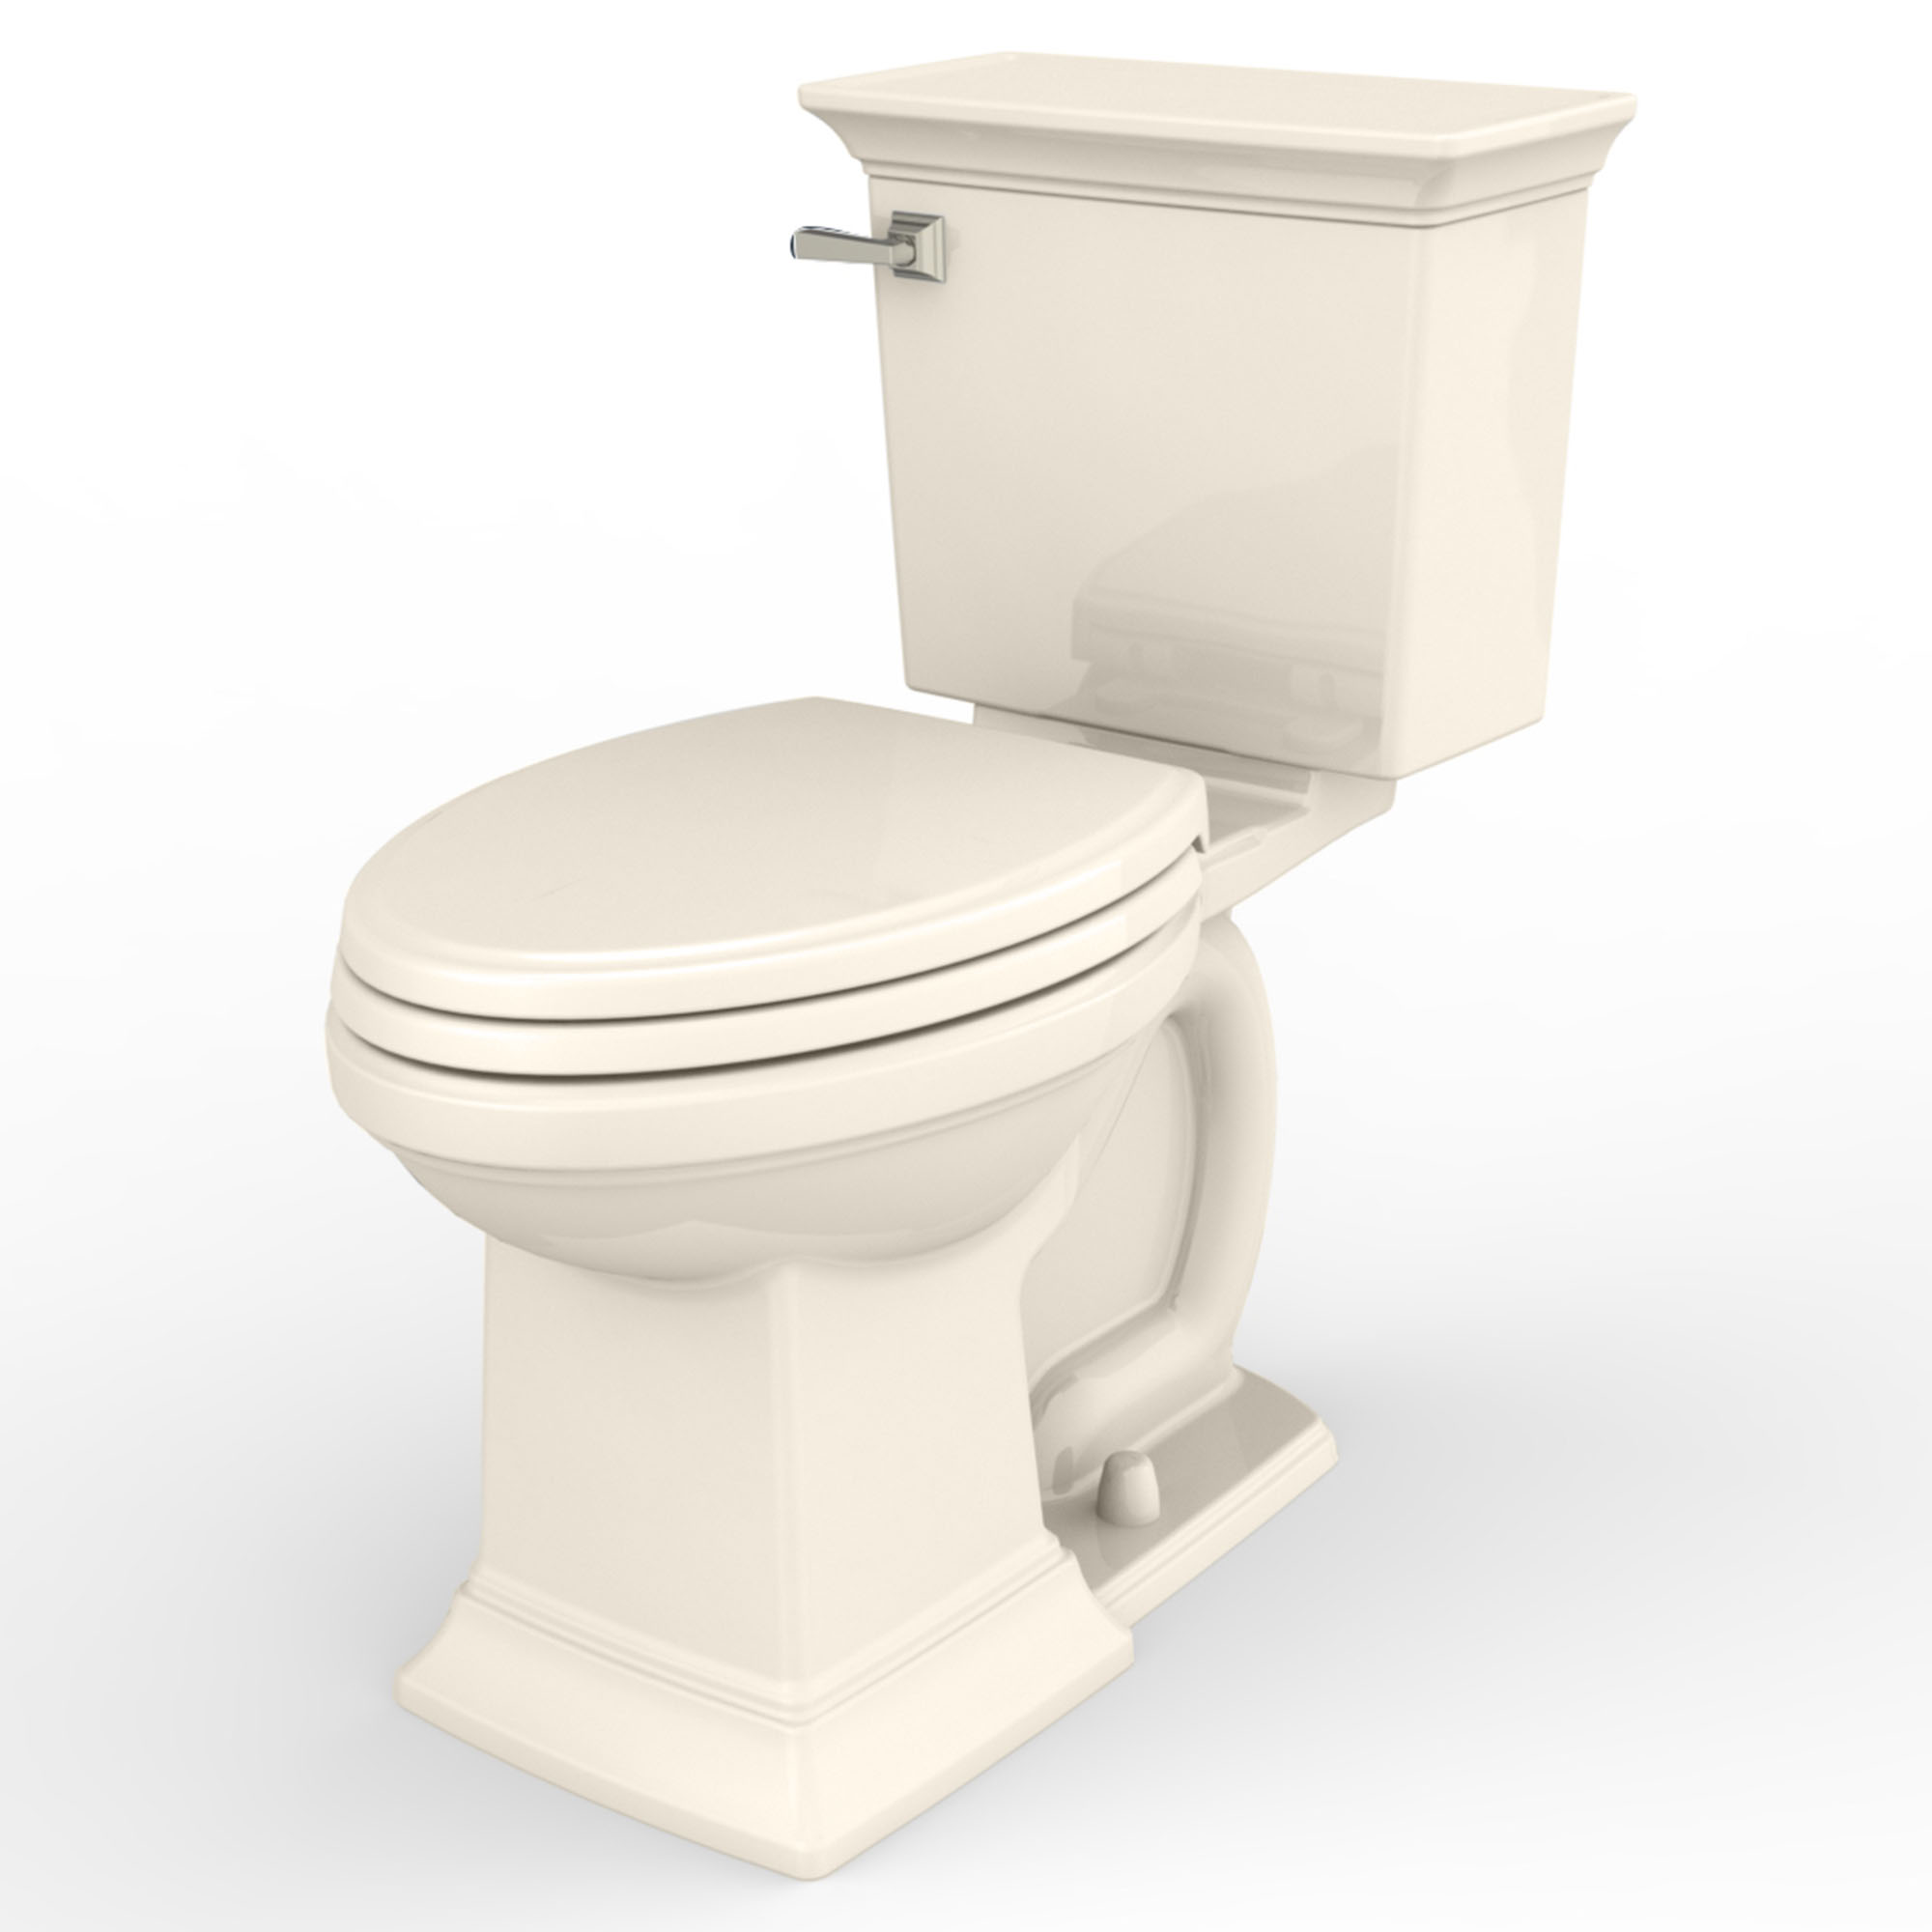 Toilette Town Square S, 2 pièces, 1,28 gpc/4,8 lpc, à cuvette allongée à hauteur de chaise, sans siège